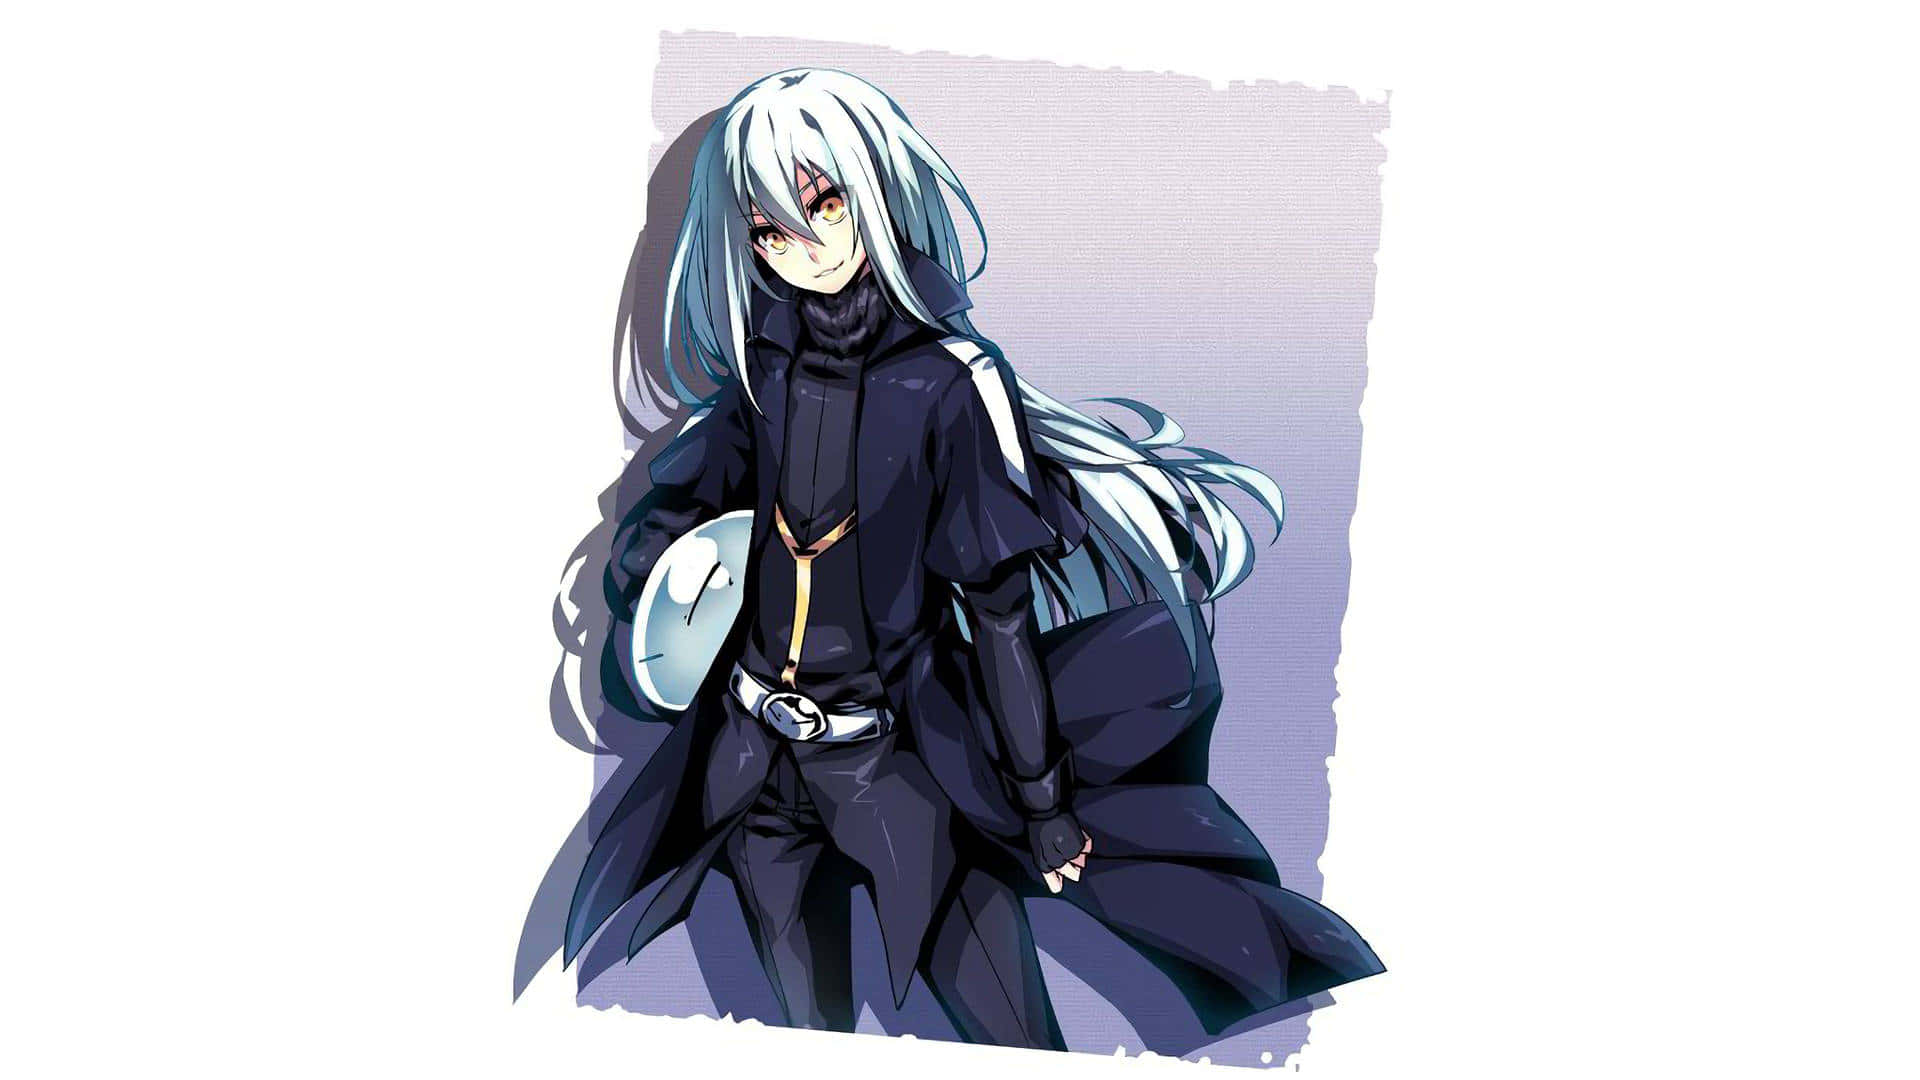 Rimuru Pfp In Black Outfit Background